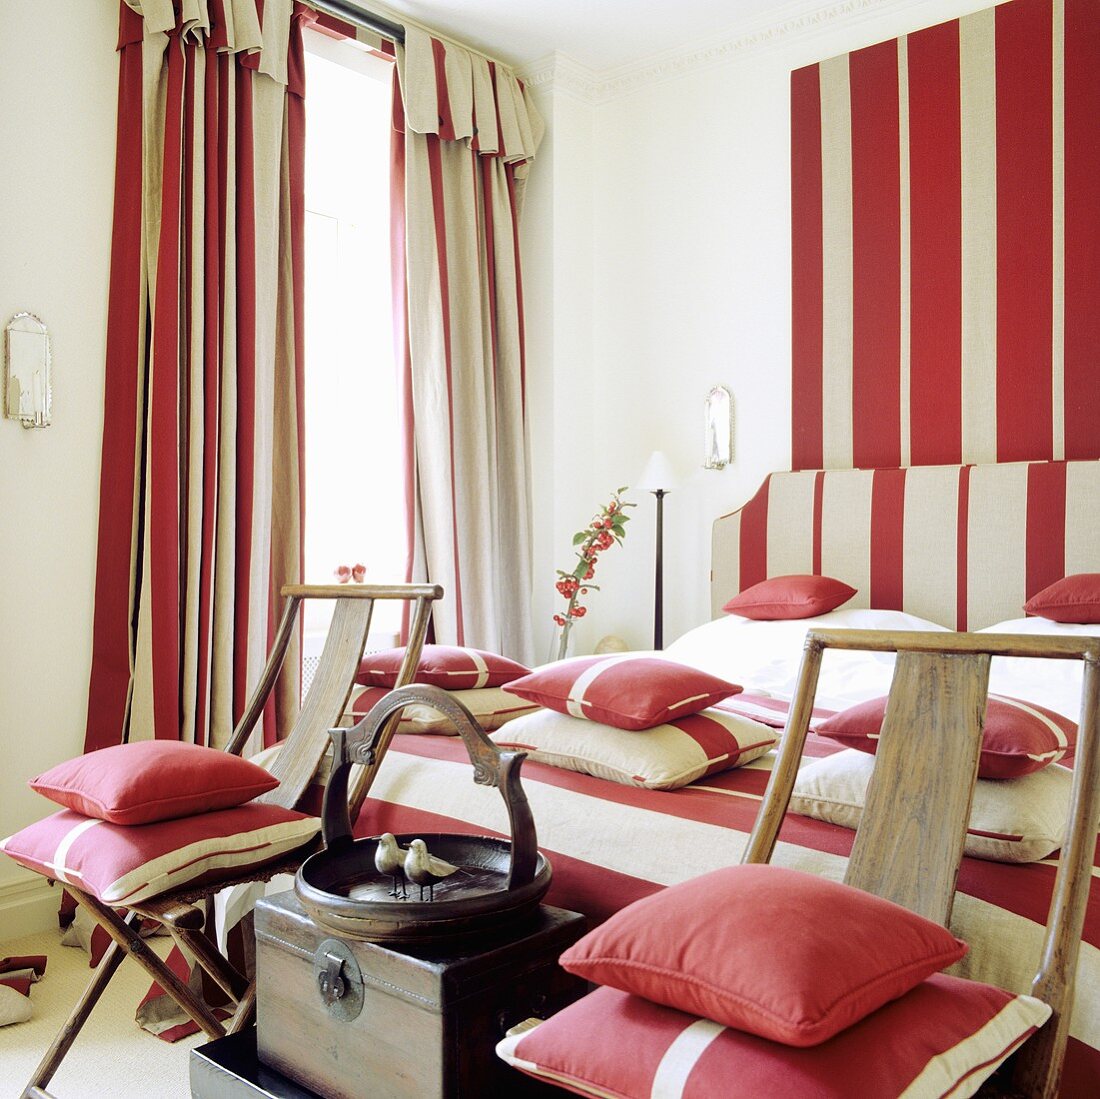 Schlafzimmer mit rot-weissen Streifen, auf Kissen, Bettwäsche, Vorhänge und Wand